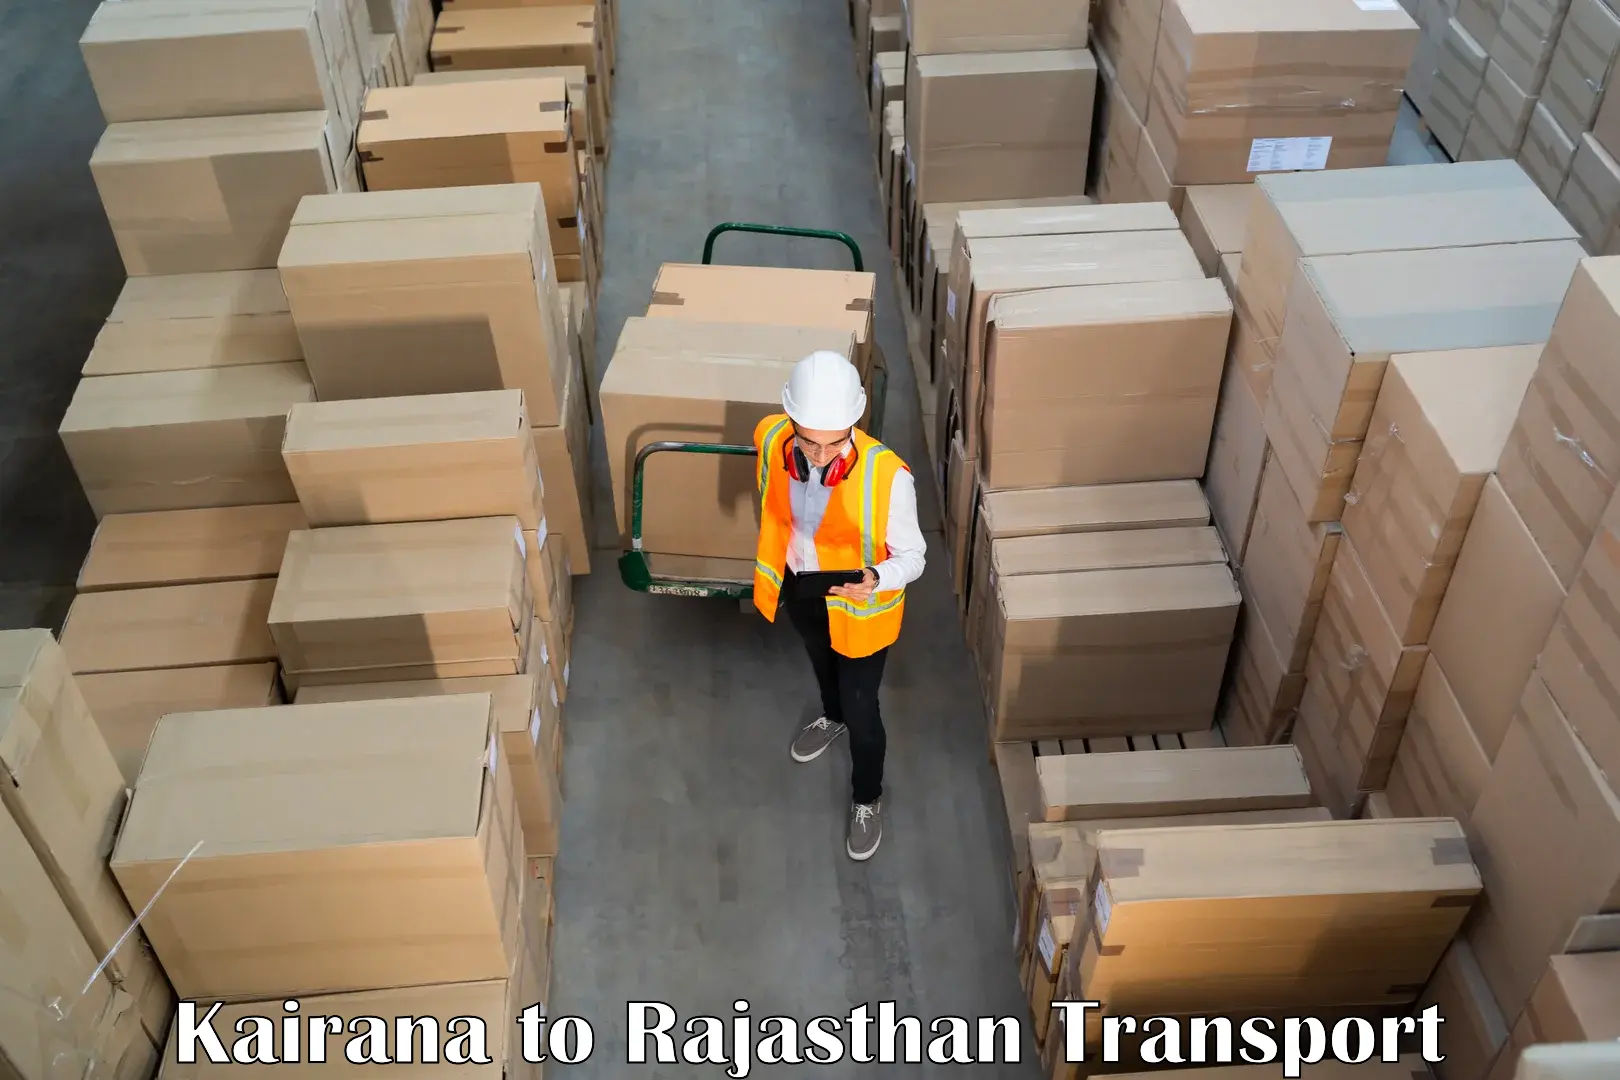 Shipping partner Kairana to Abu Road